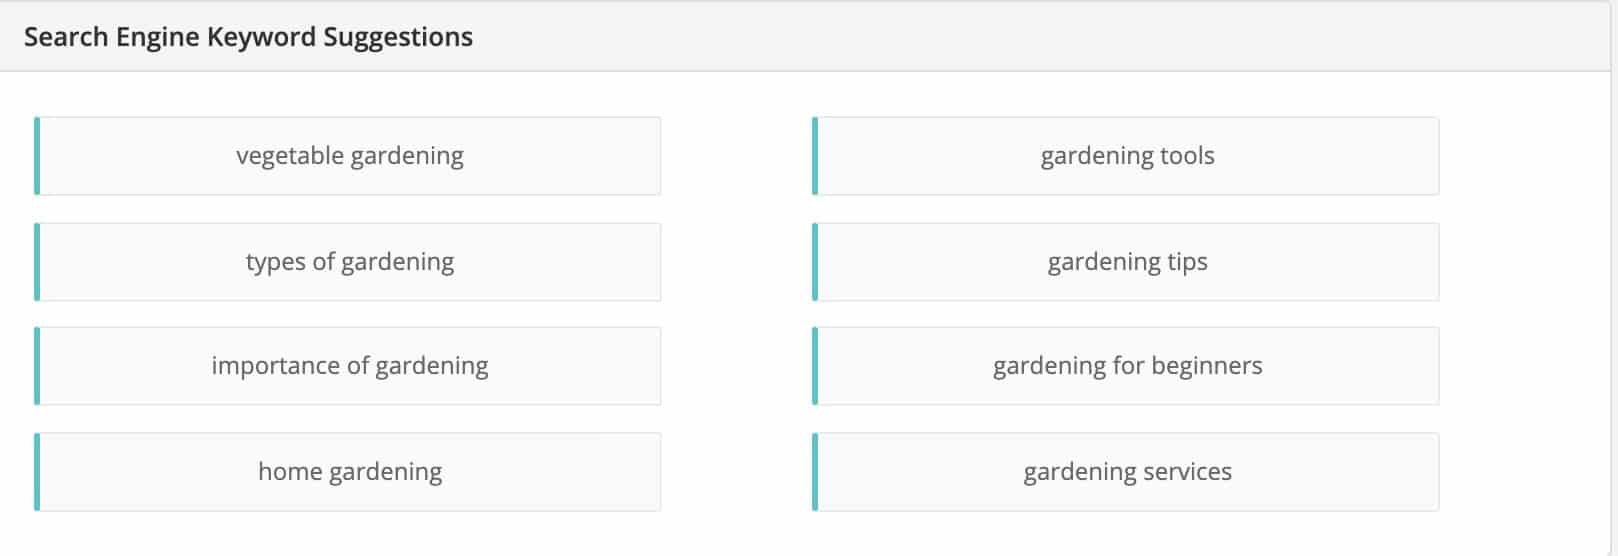 Gardening niche related keywords